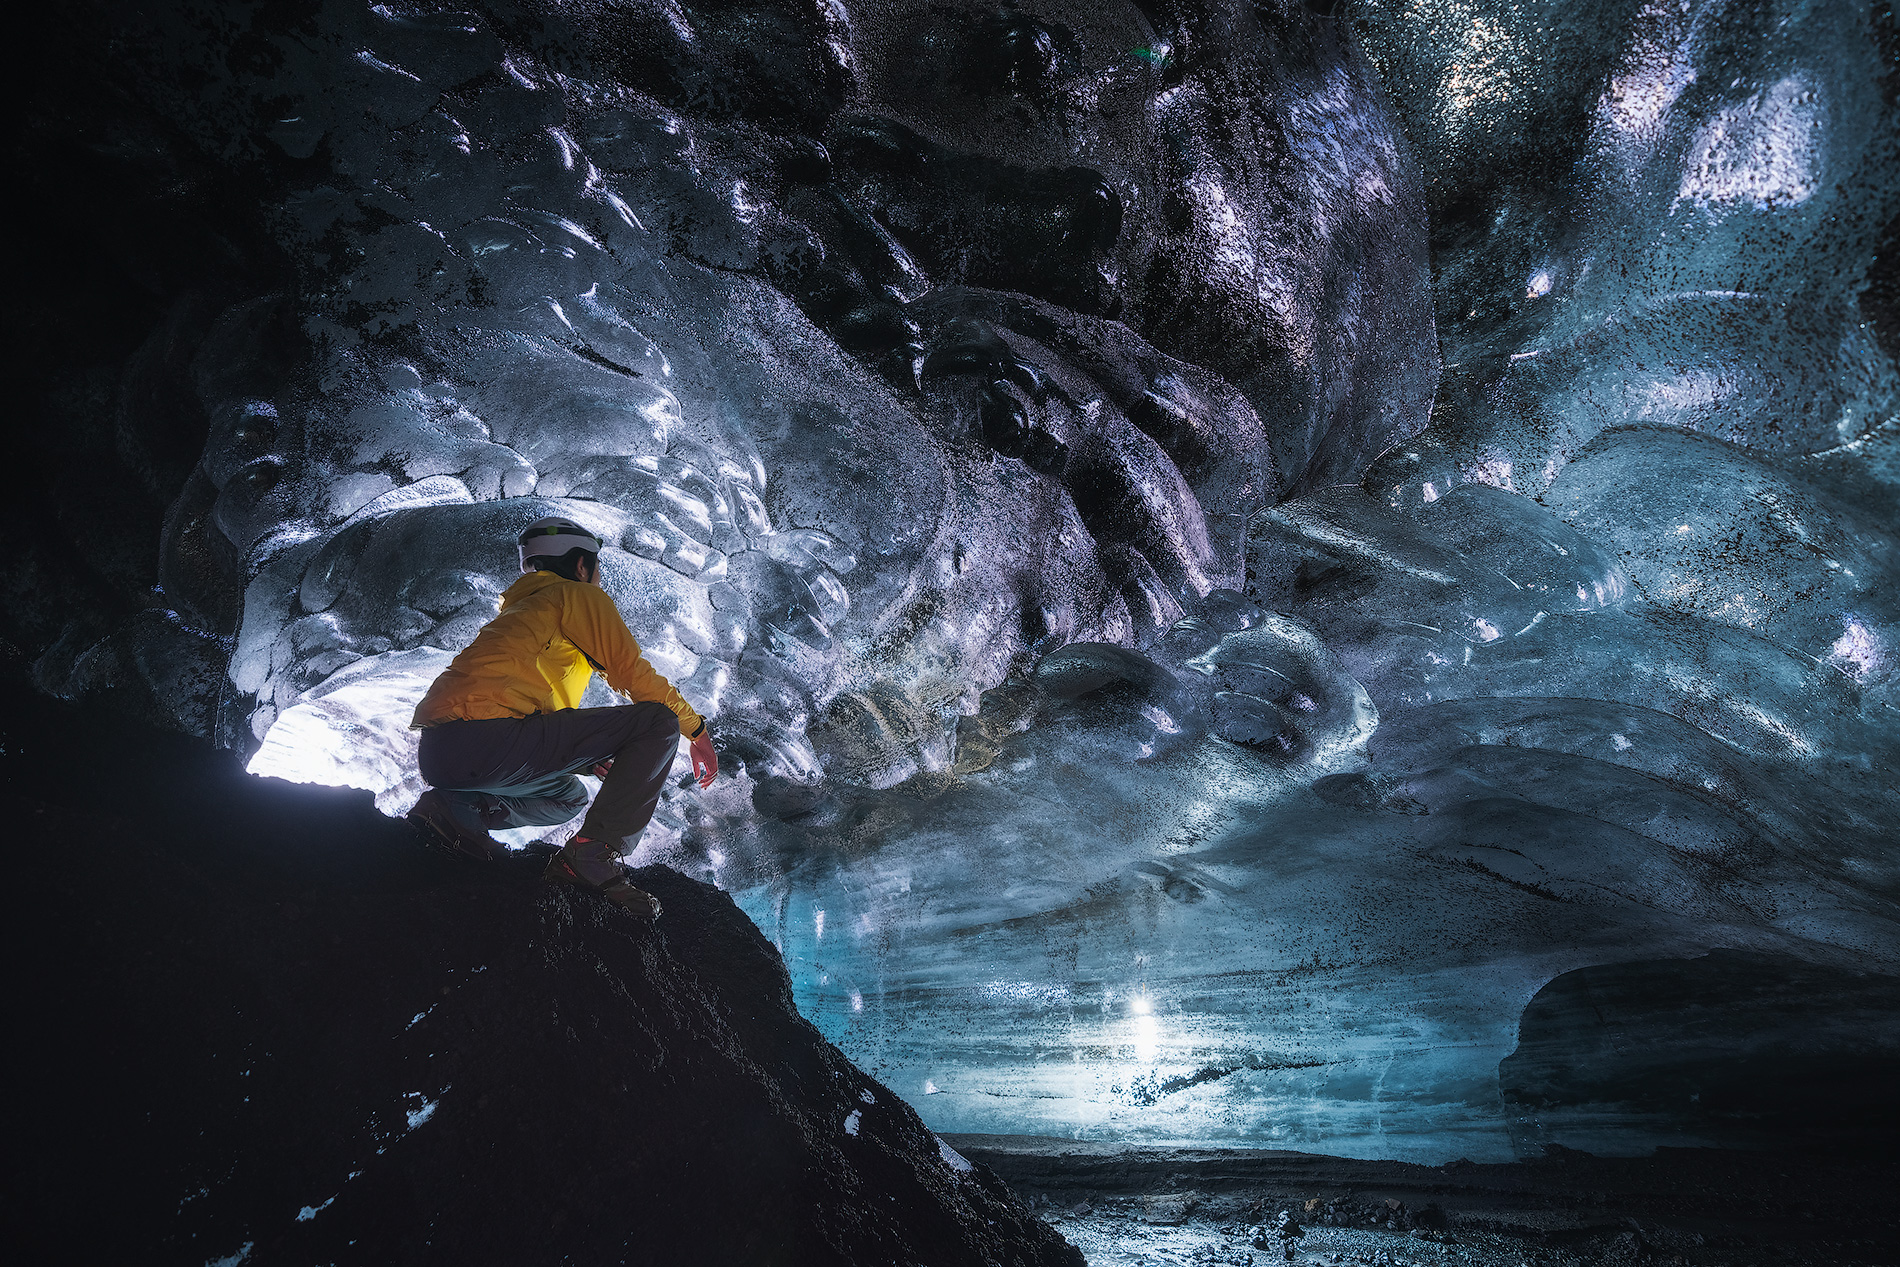 Å kunne se innsiden av en isgrotte er en opplevelse av en annen verden og en unik mulighet.